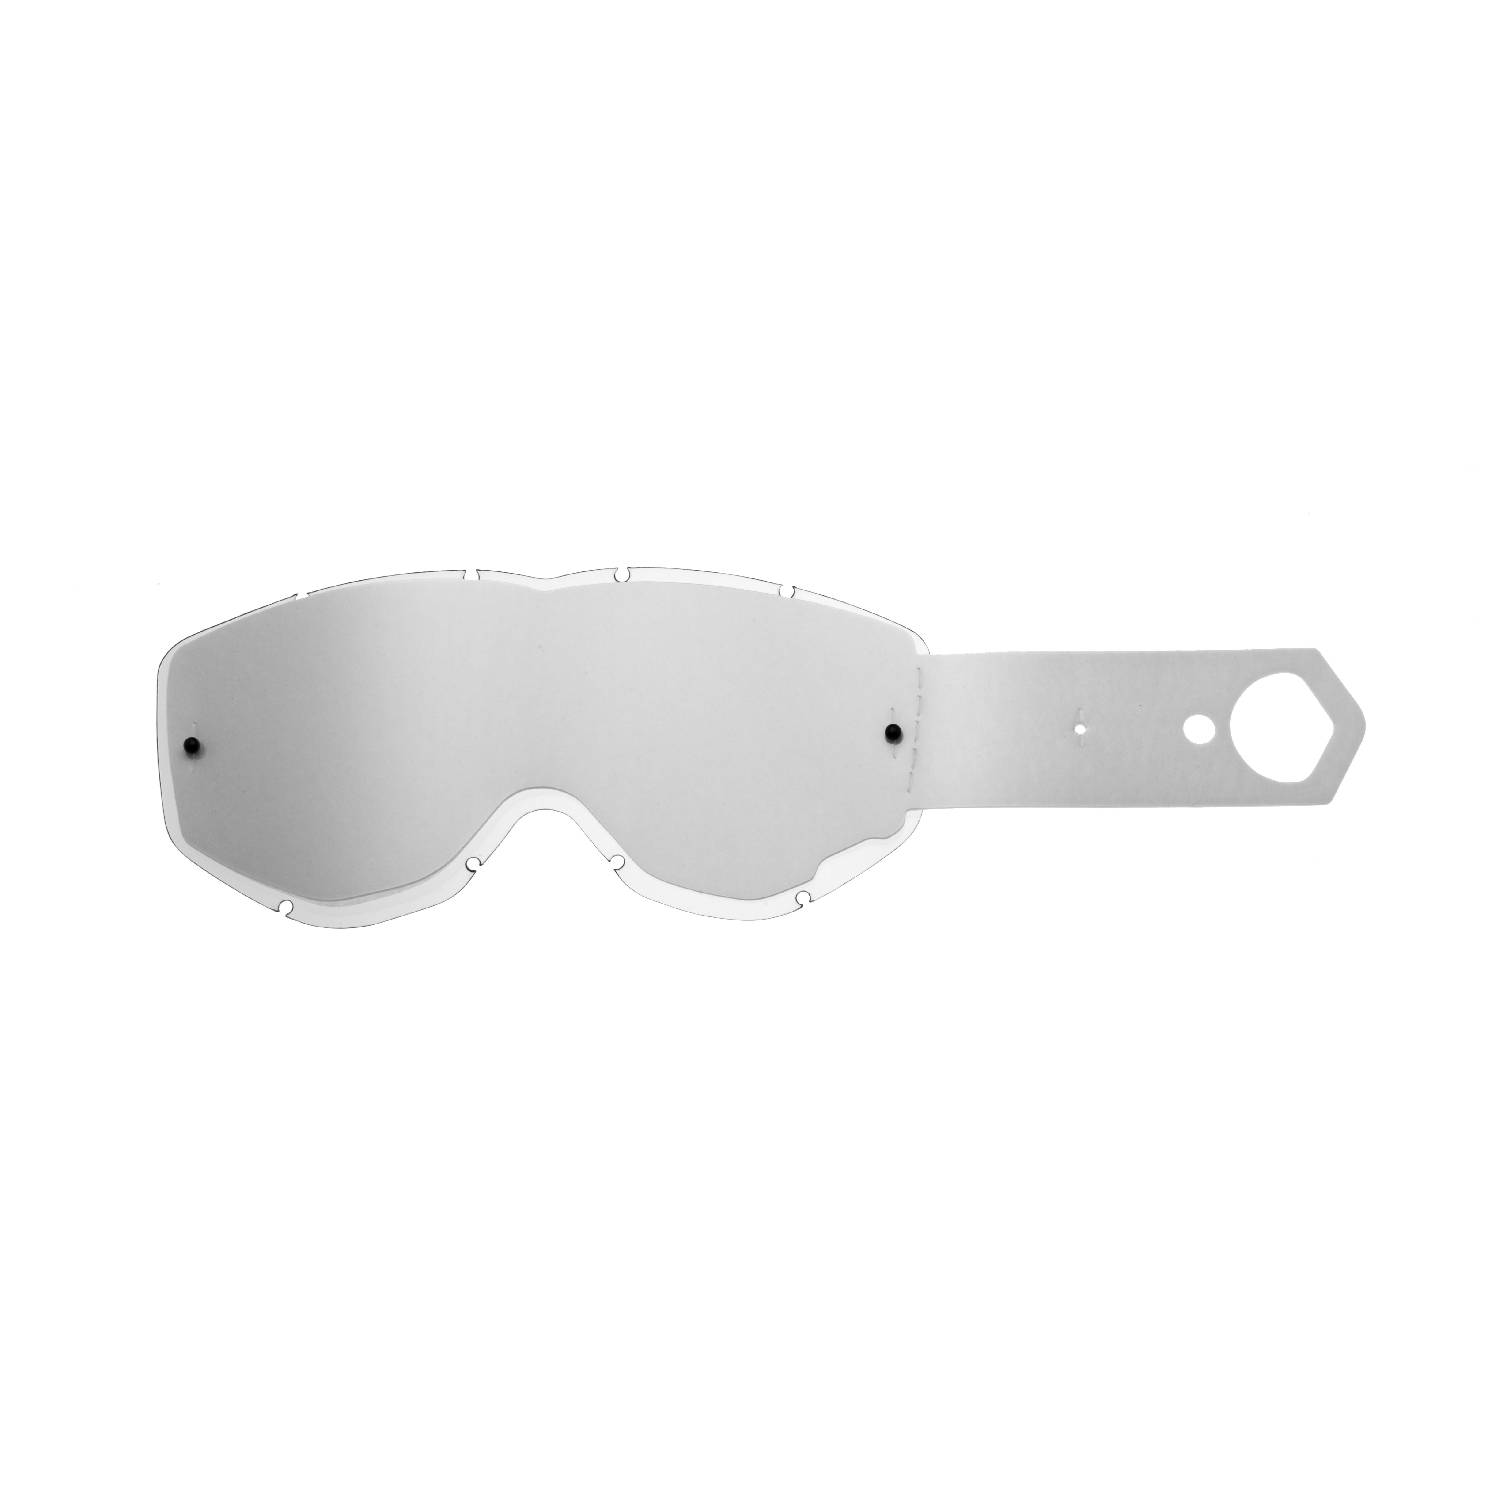 Lente trasparente + 10 Strappi (Combo) compatibile per occhiale/maschera Spy Magneto